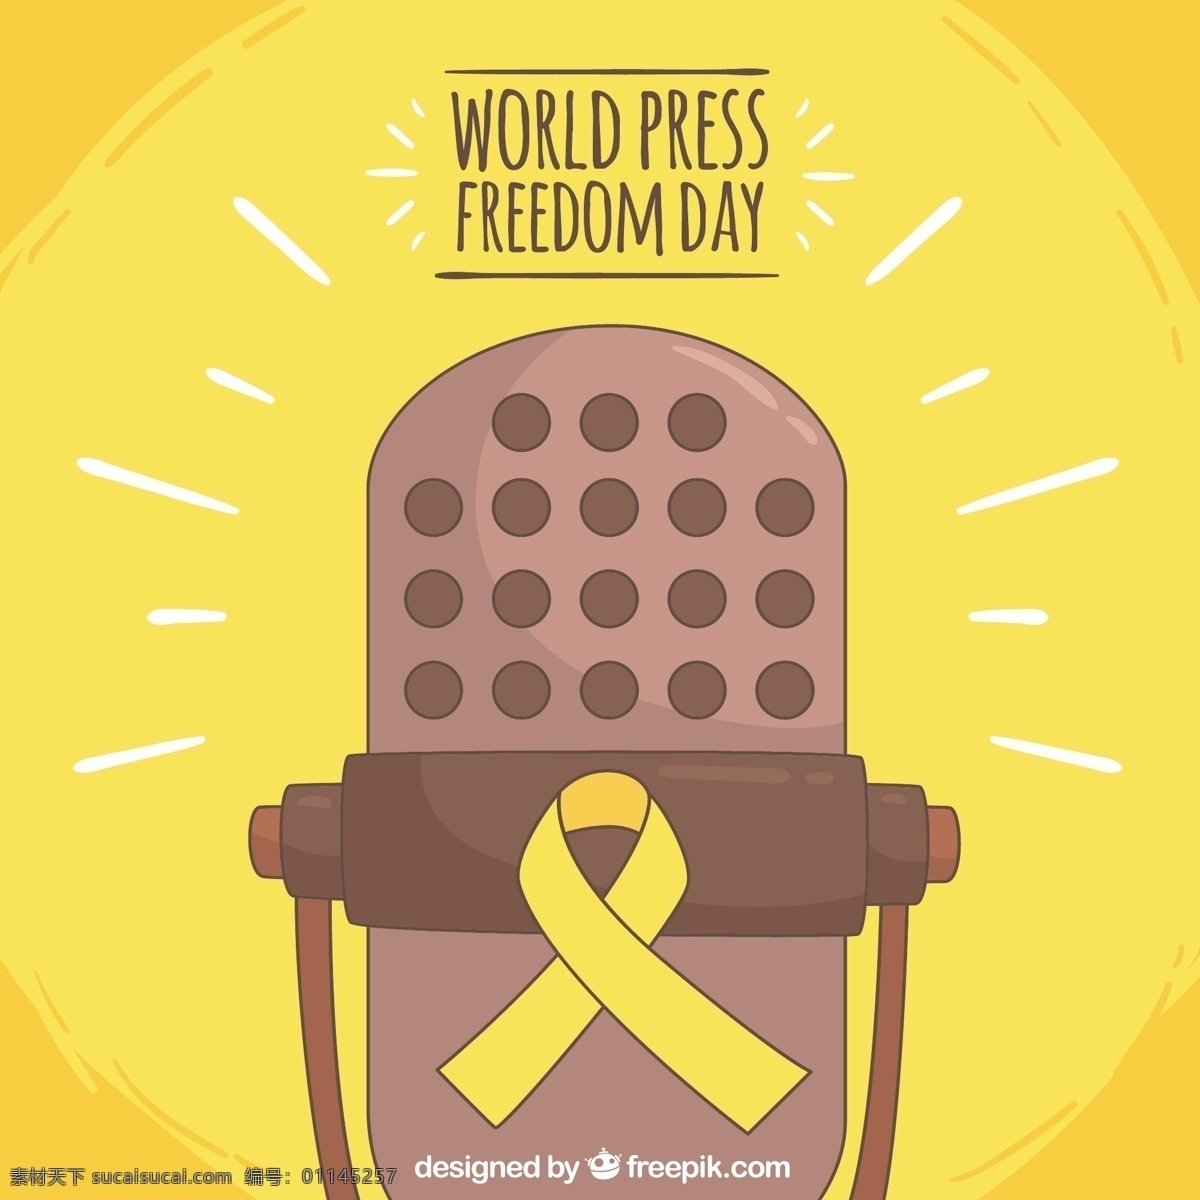 黄色 背景 麦克风 世界 通讯 信息 媒体 社区 言论 自由 记者 政府 新闻 政治 独立 民主 促进